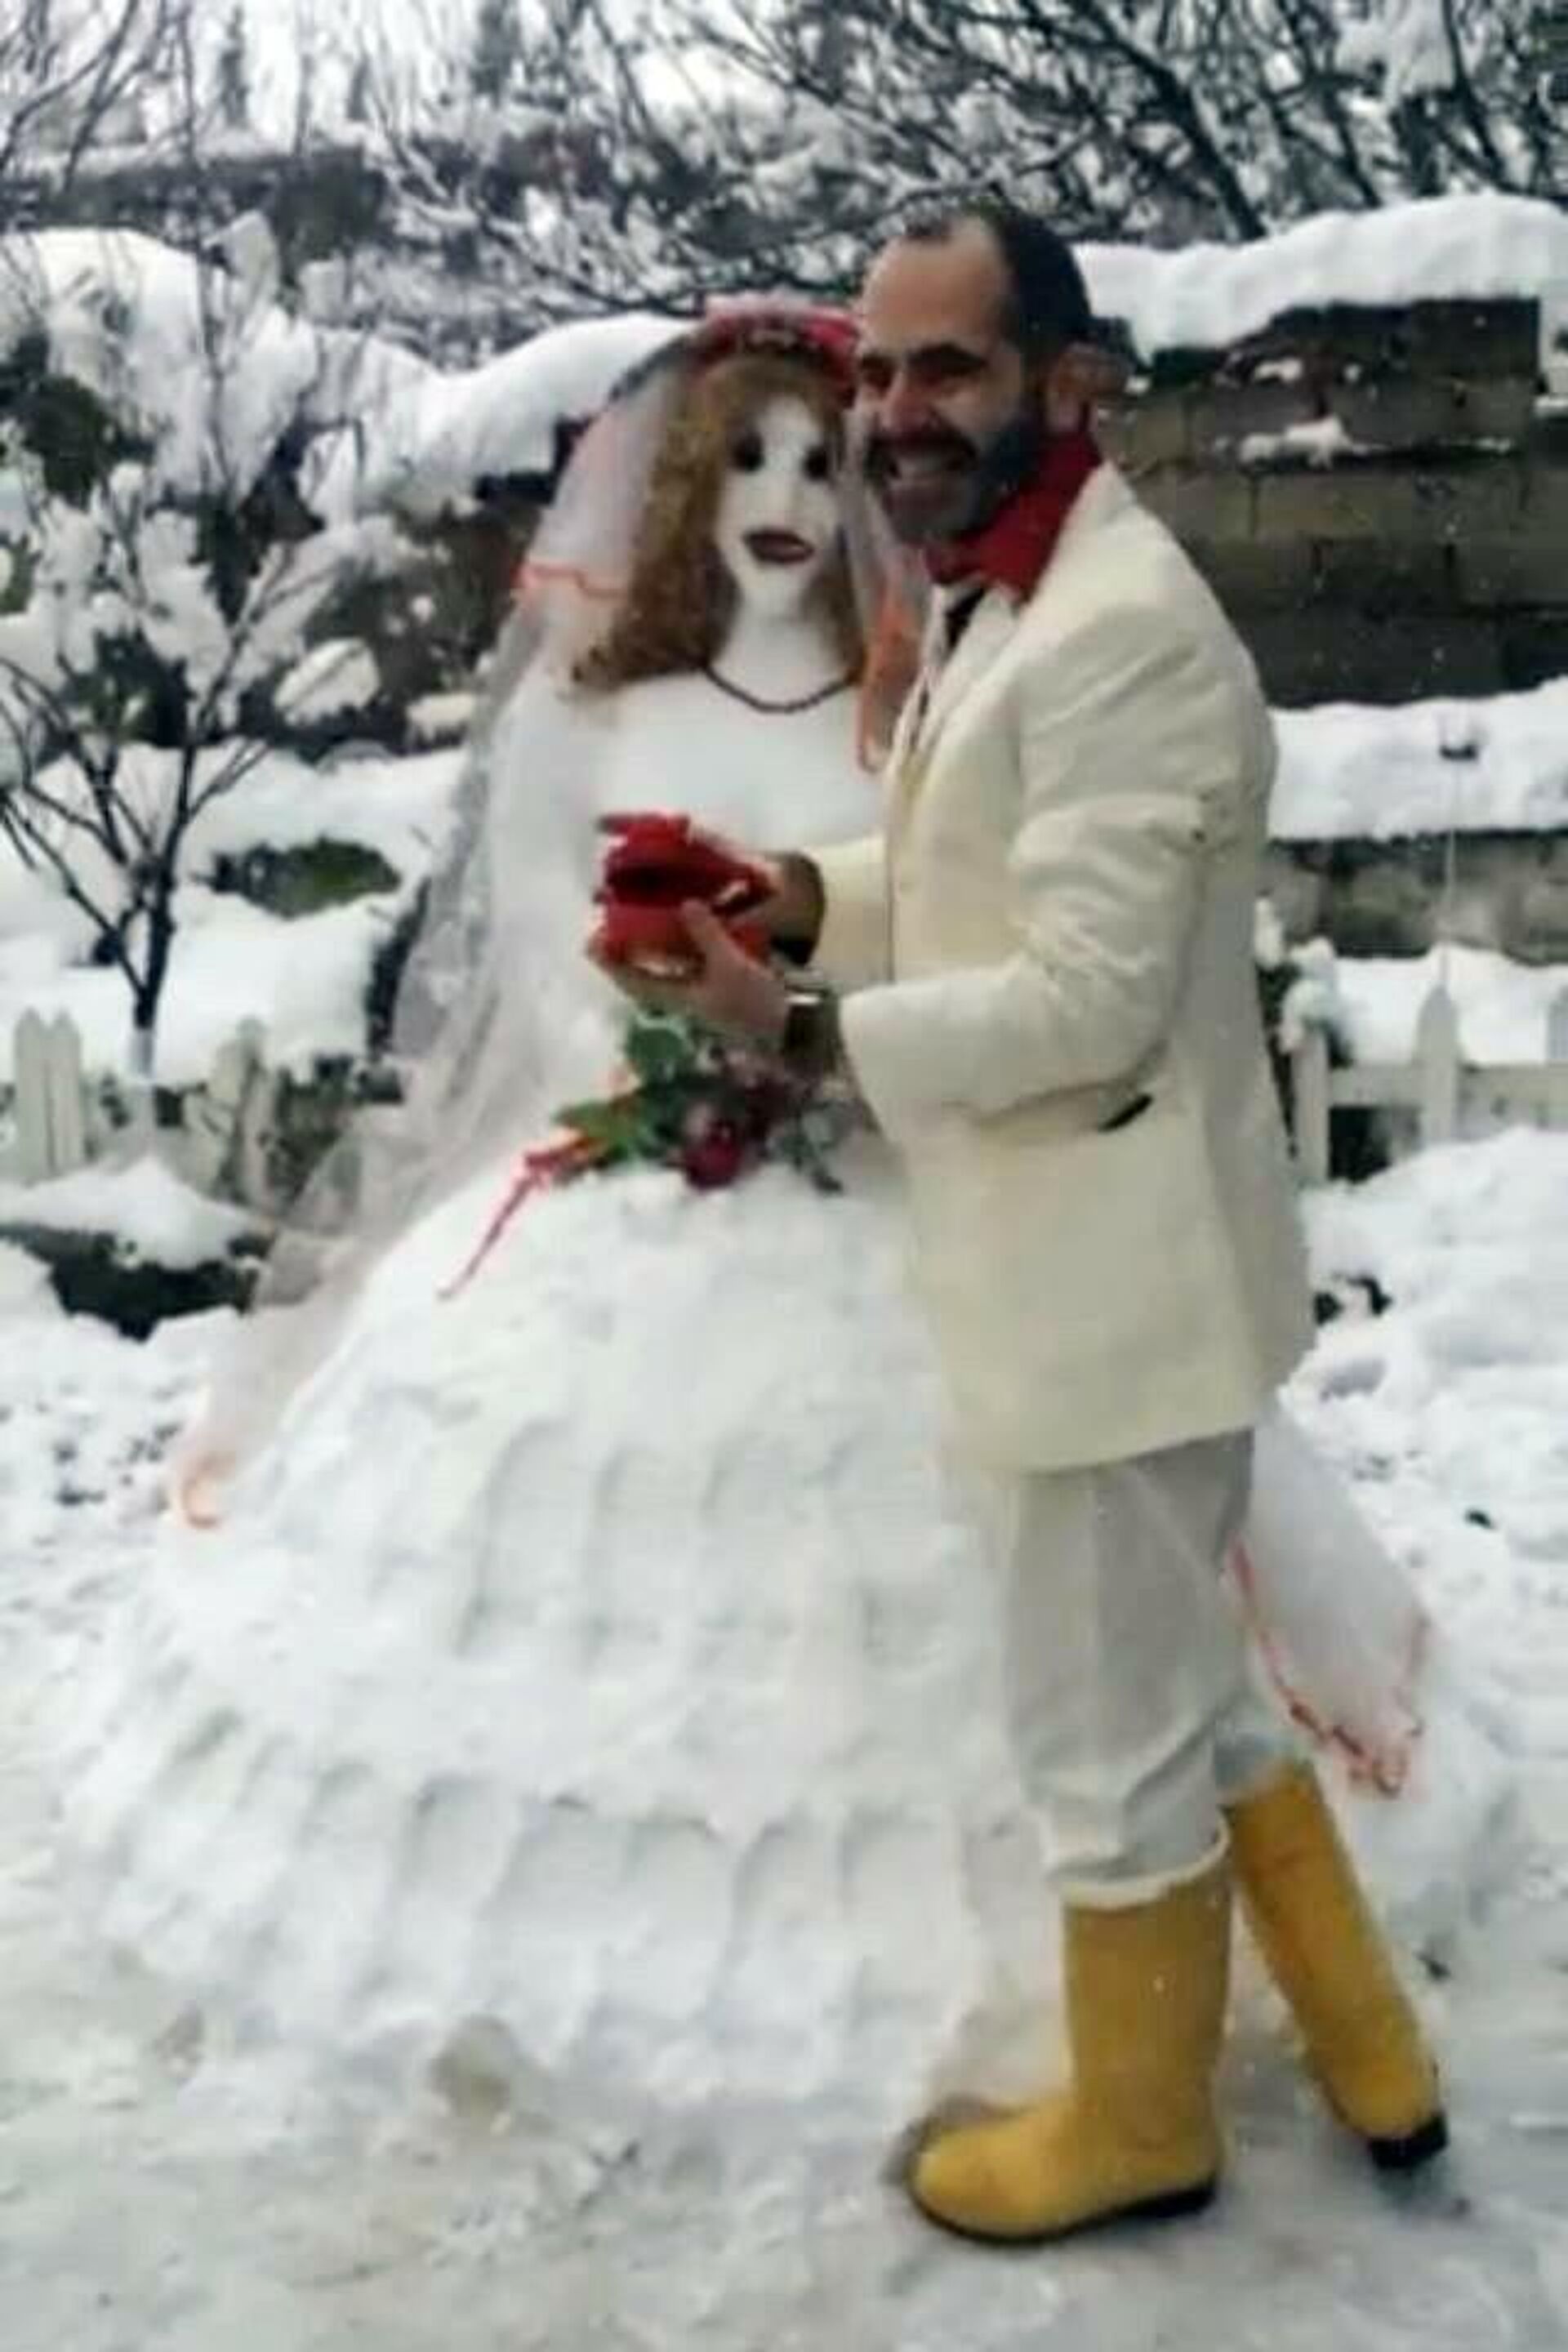 Bursa'da 7 yıl önce kardan yaptığı gelinle evlenip, sosyal medyada tıklanma rekorları kıran adam, bu kez de yaşlanan kardan karısına takma diş hediye etti. - Sputnik Türkiye, 1920, 26.01.2022